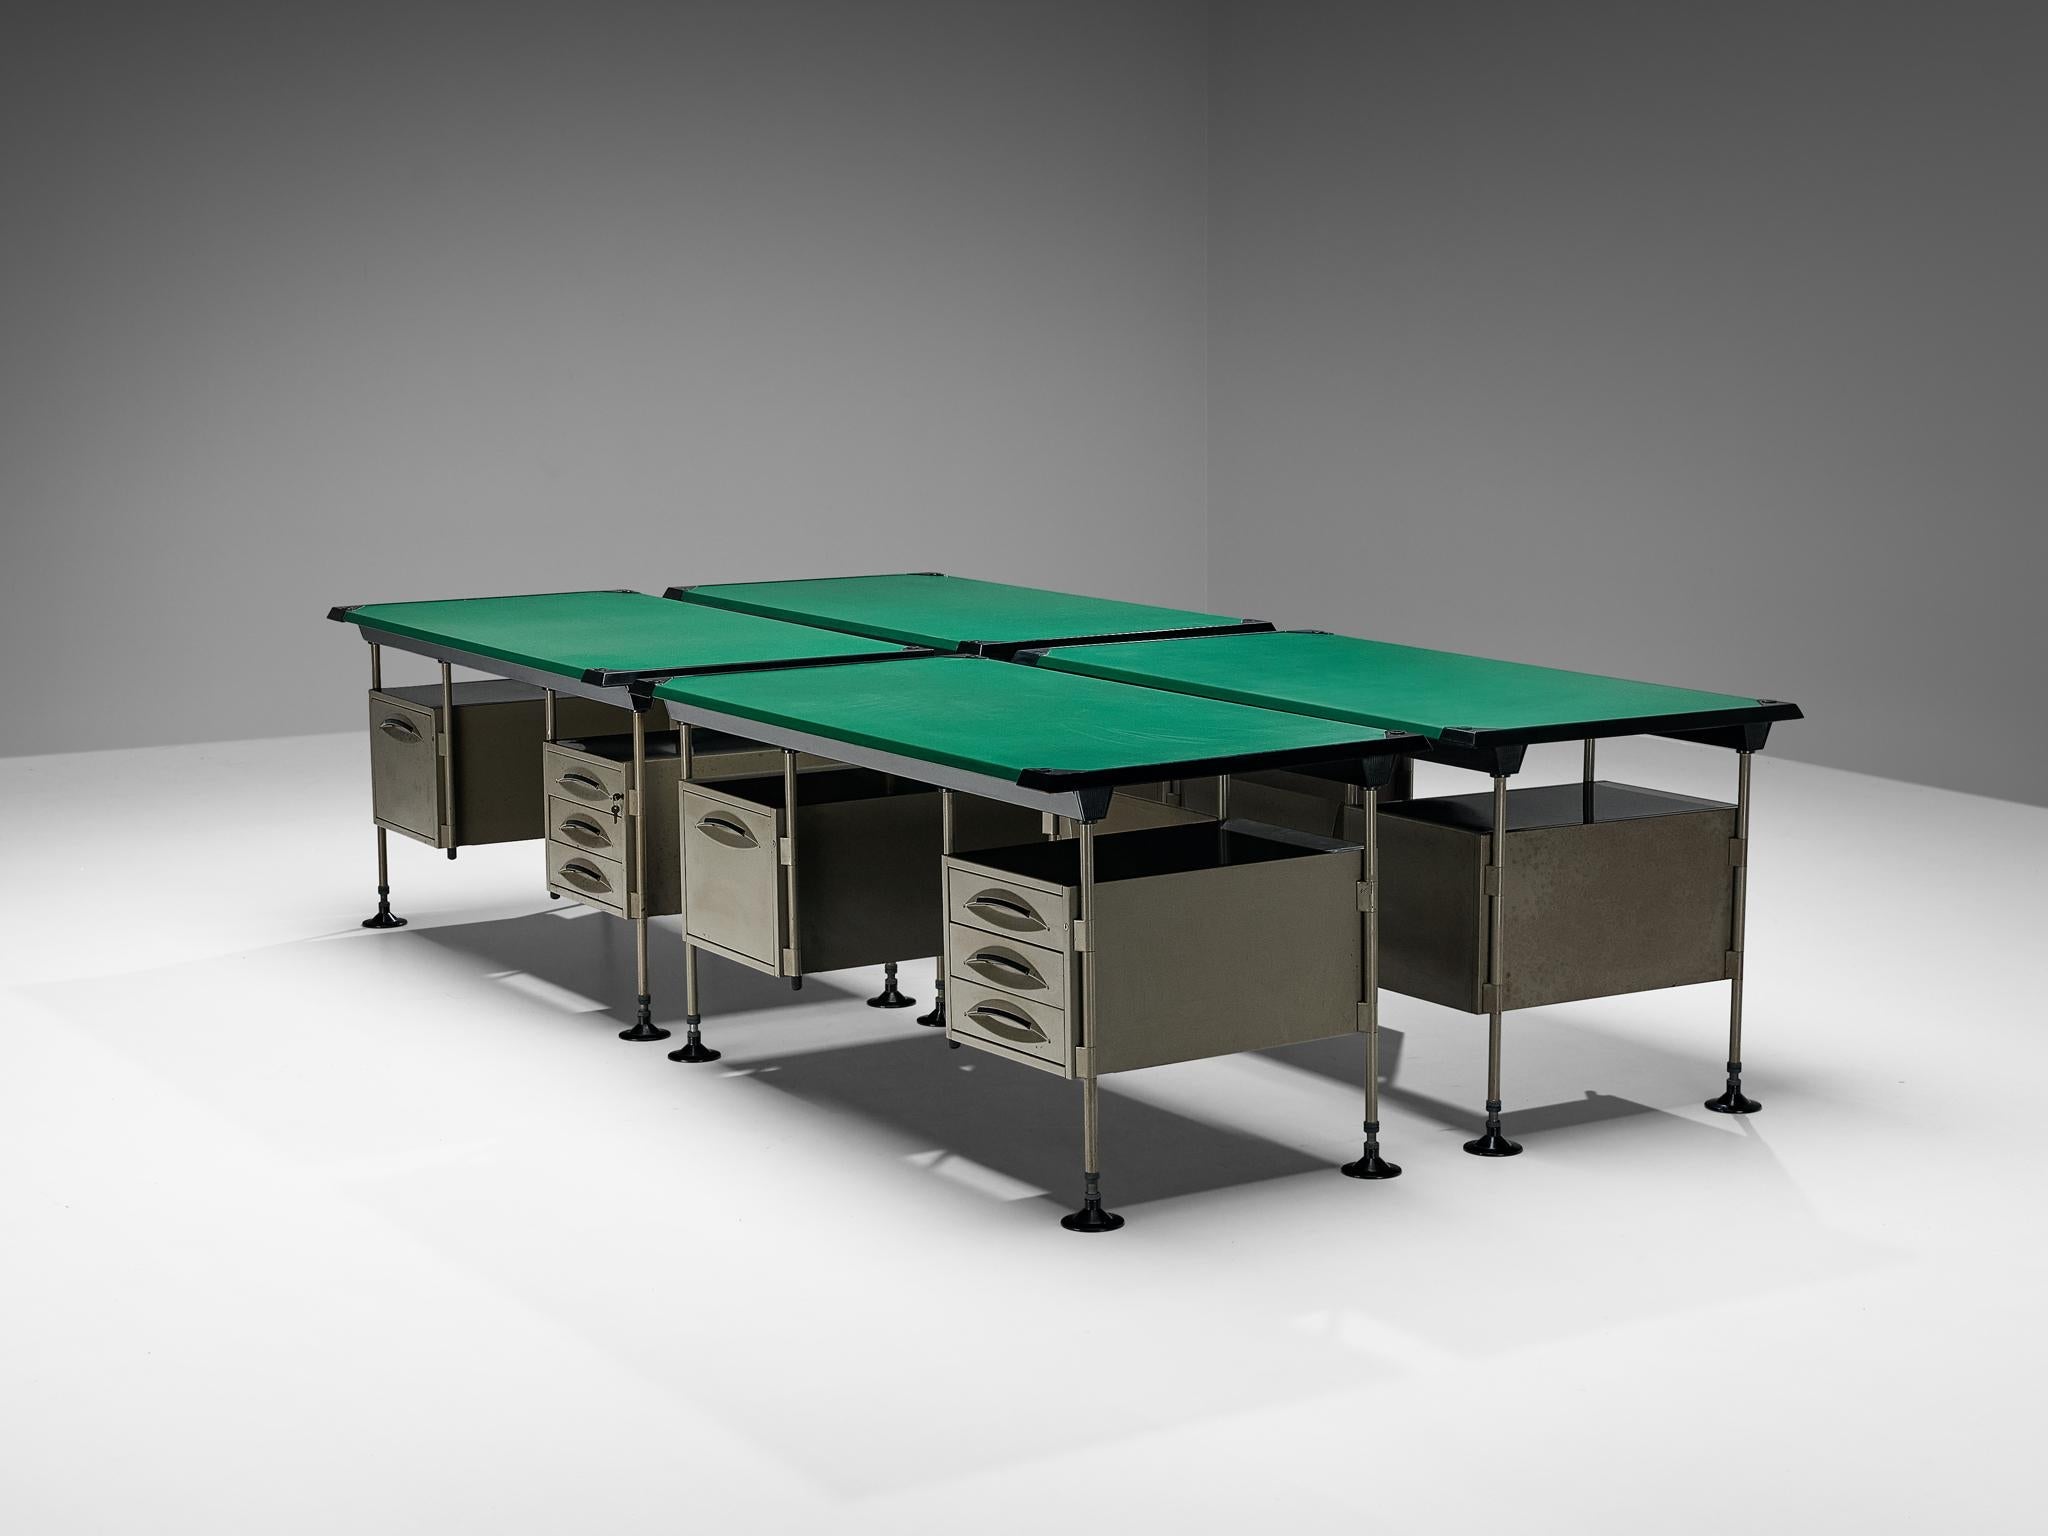 Studio BBPR for Olivetti 'Spazio' Desks in Grey Coated Steel